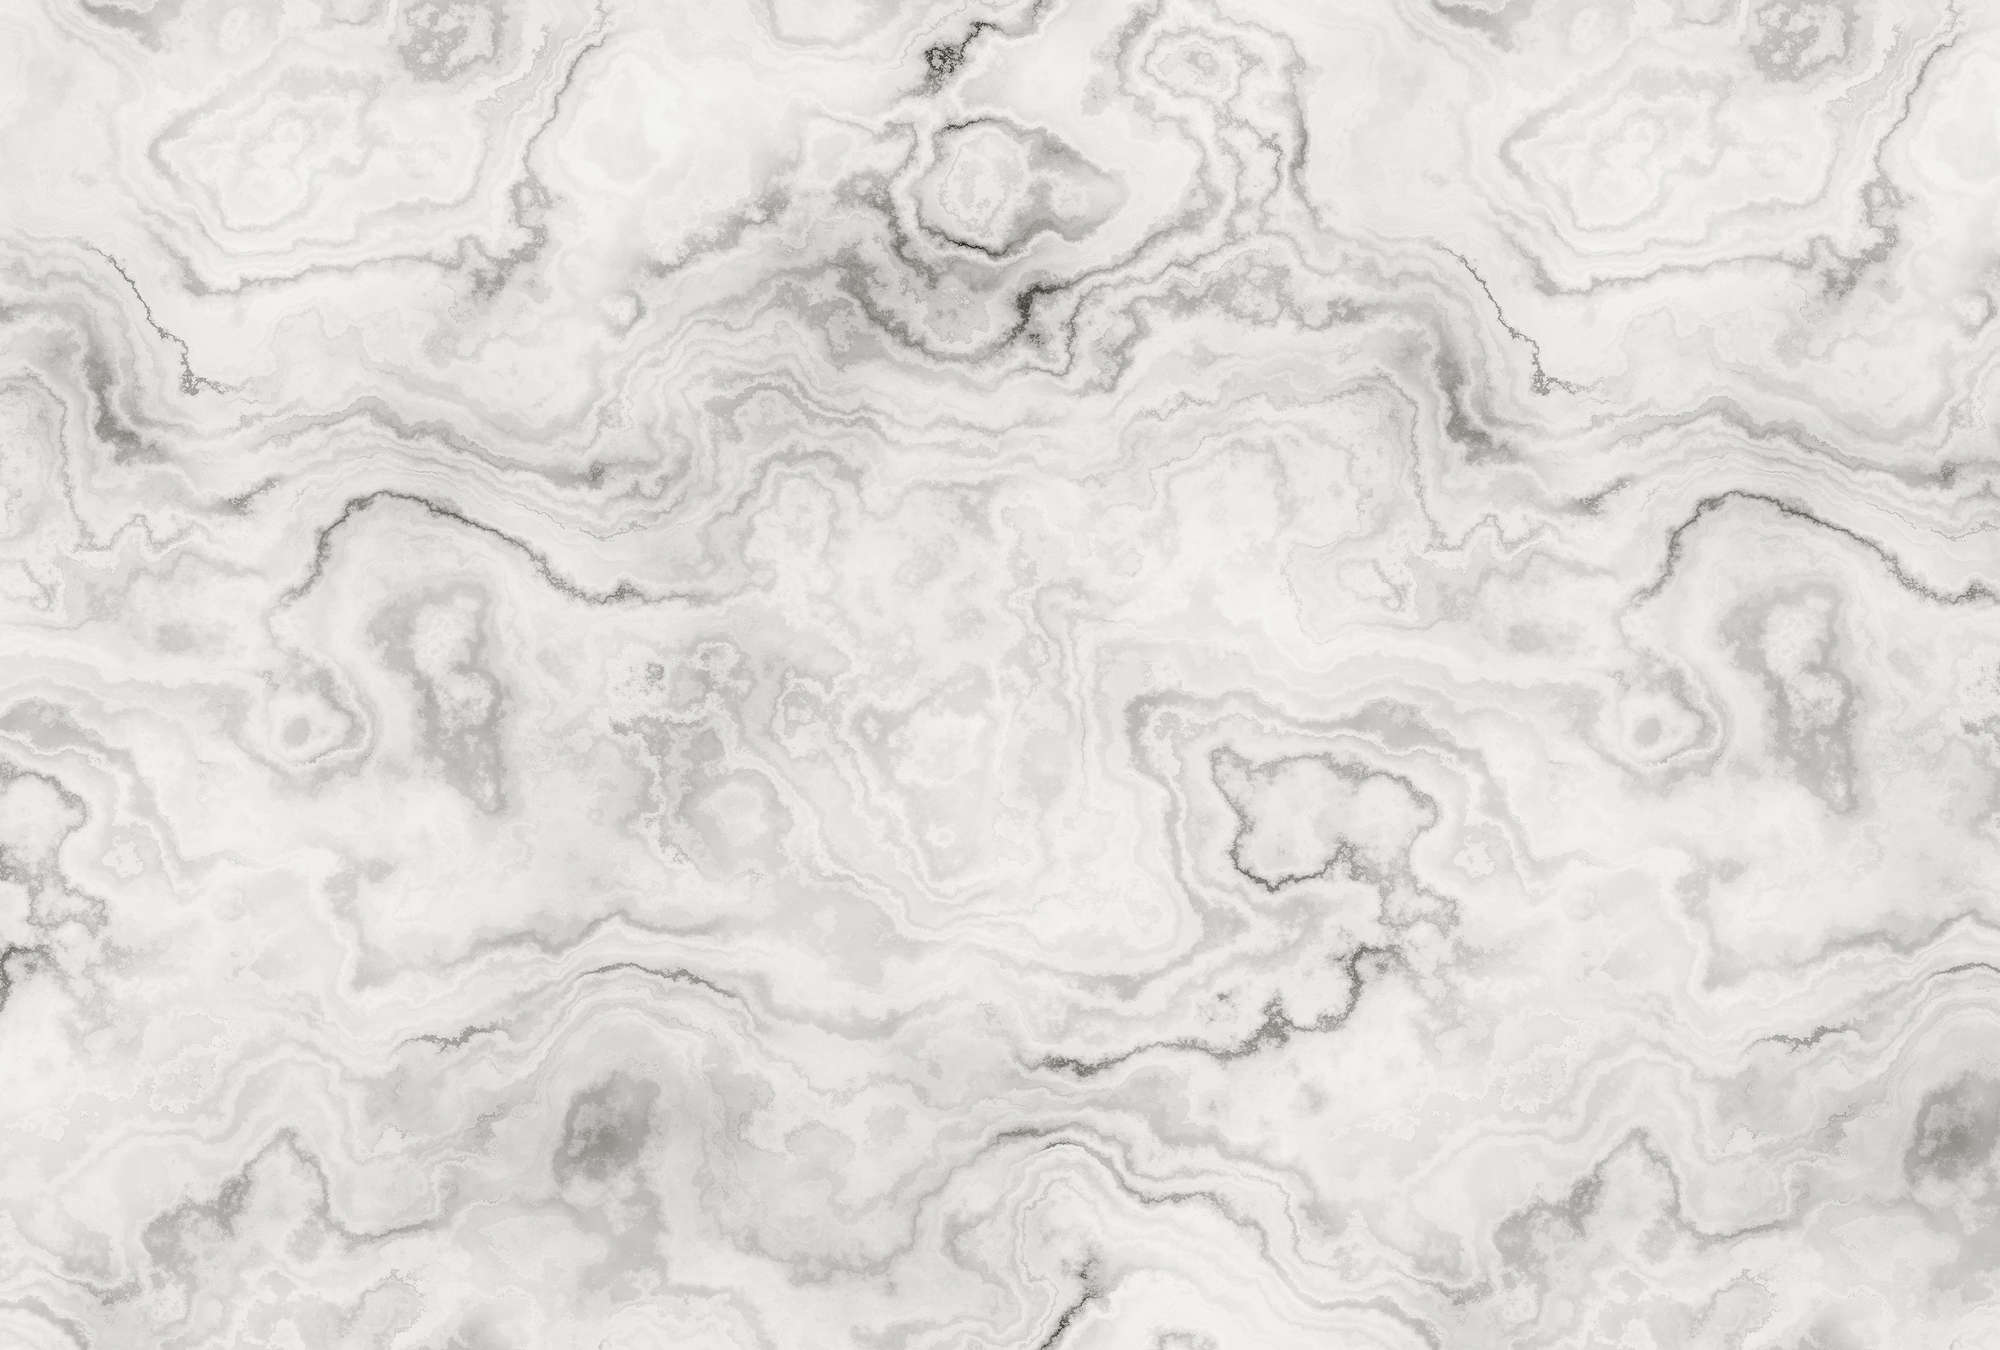             Carrara 1 - Fototapete in eleganter Marmoroptik – Grau, Weiss | Mattes Glattvlies
        